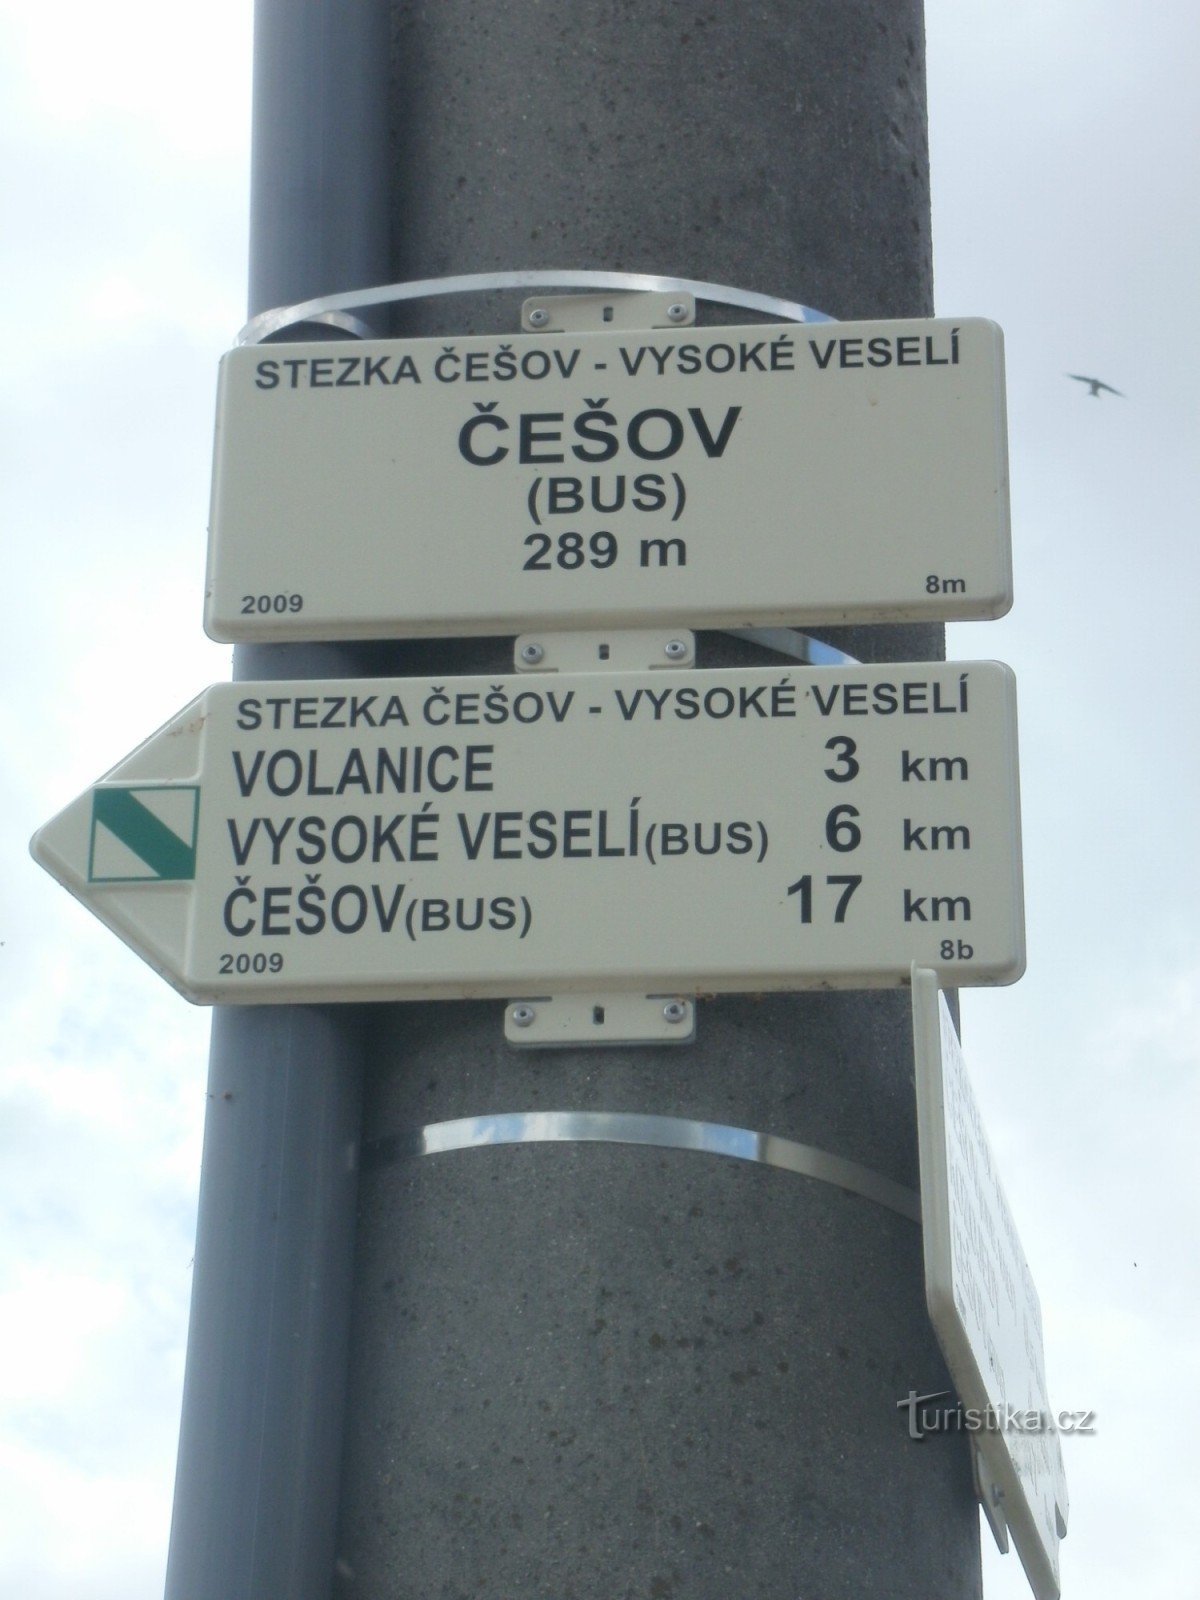 NS Češov-Vysoké Veselí - Češov bus junction